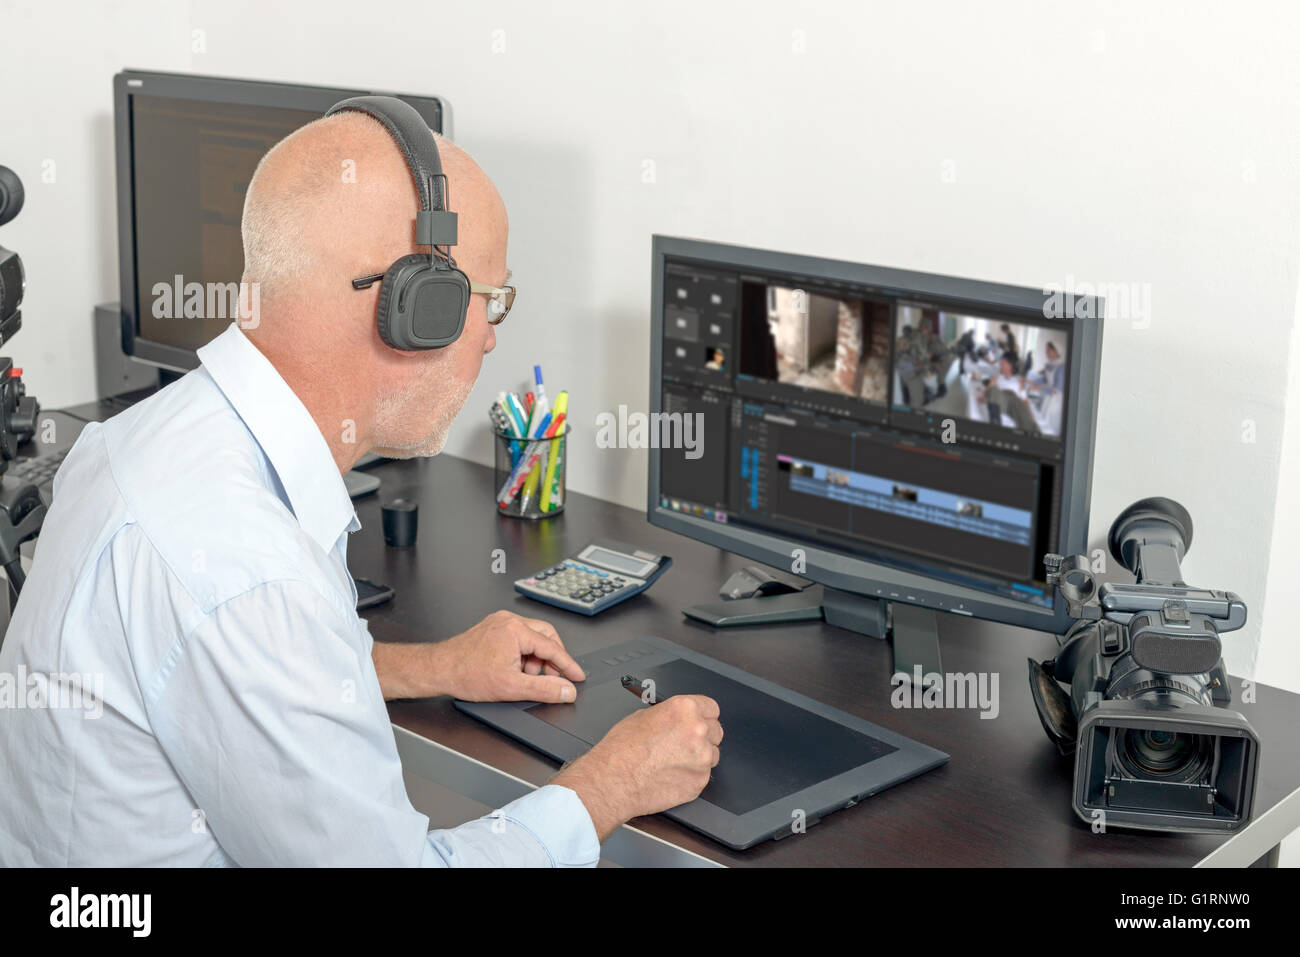 video editing studio design